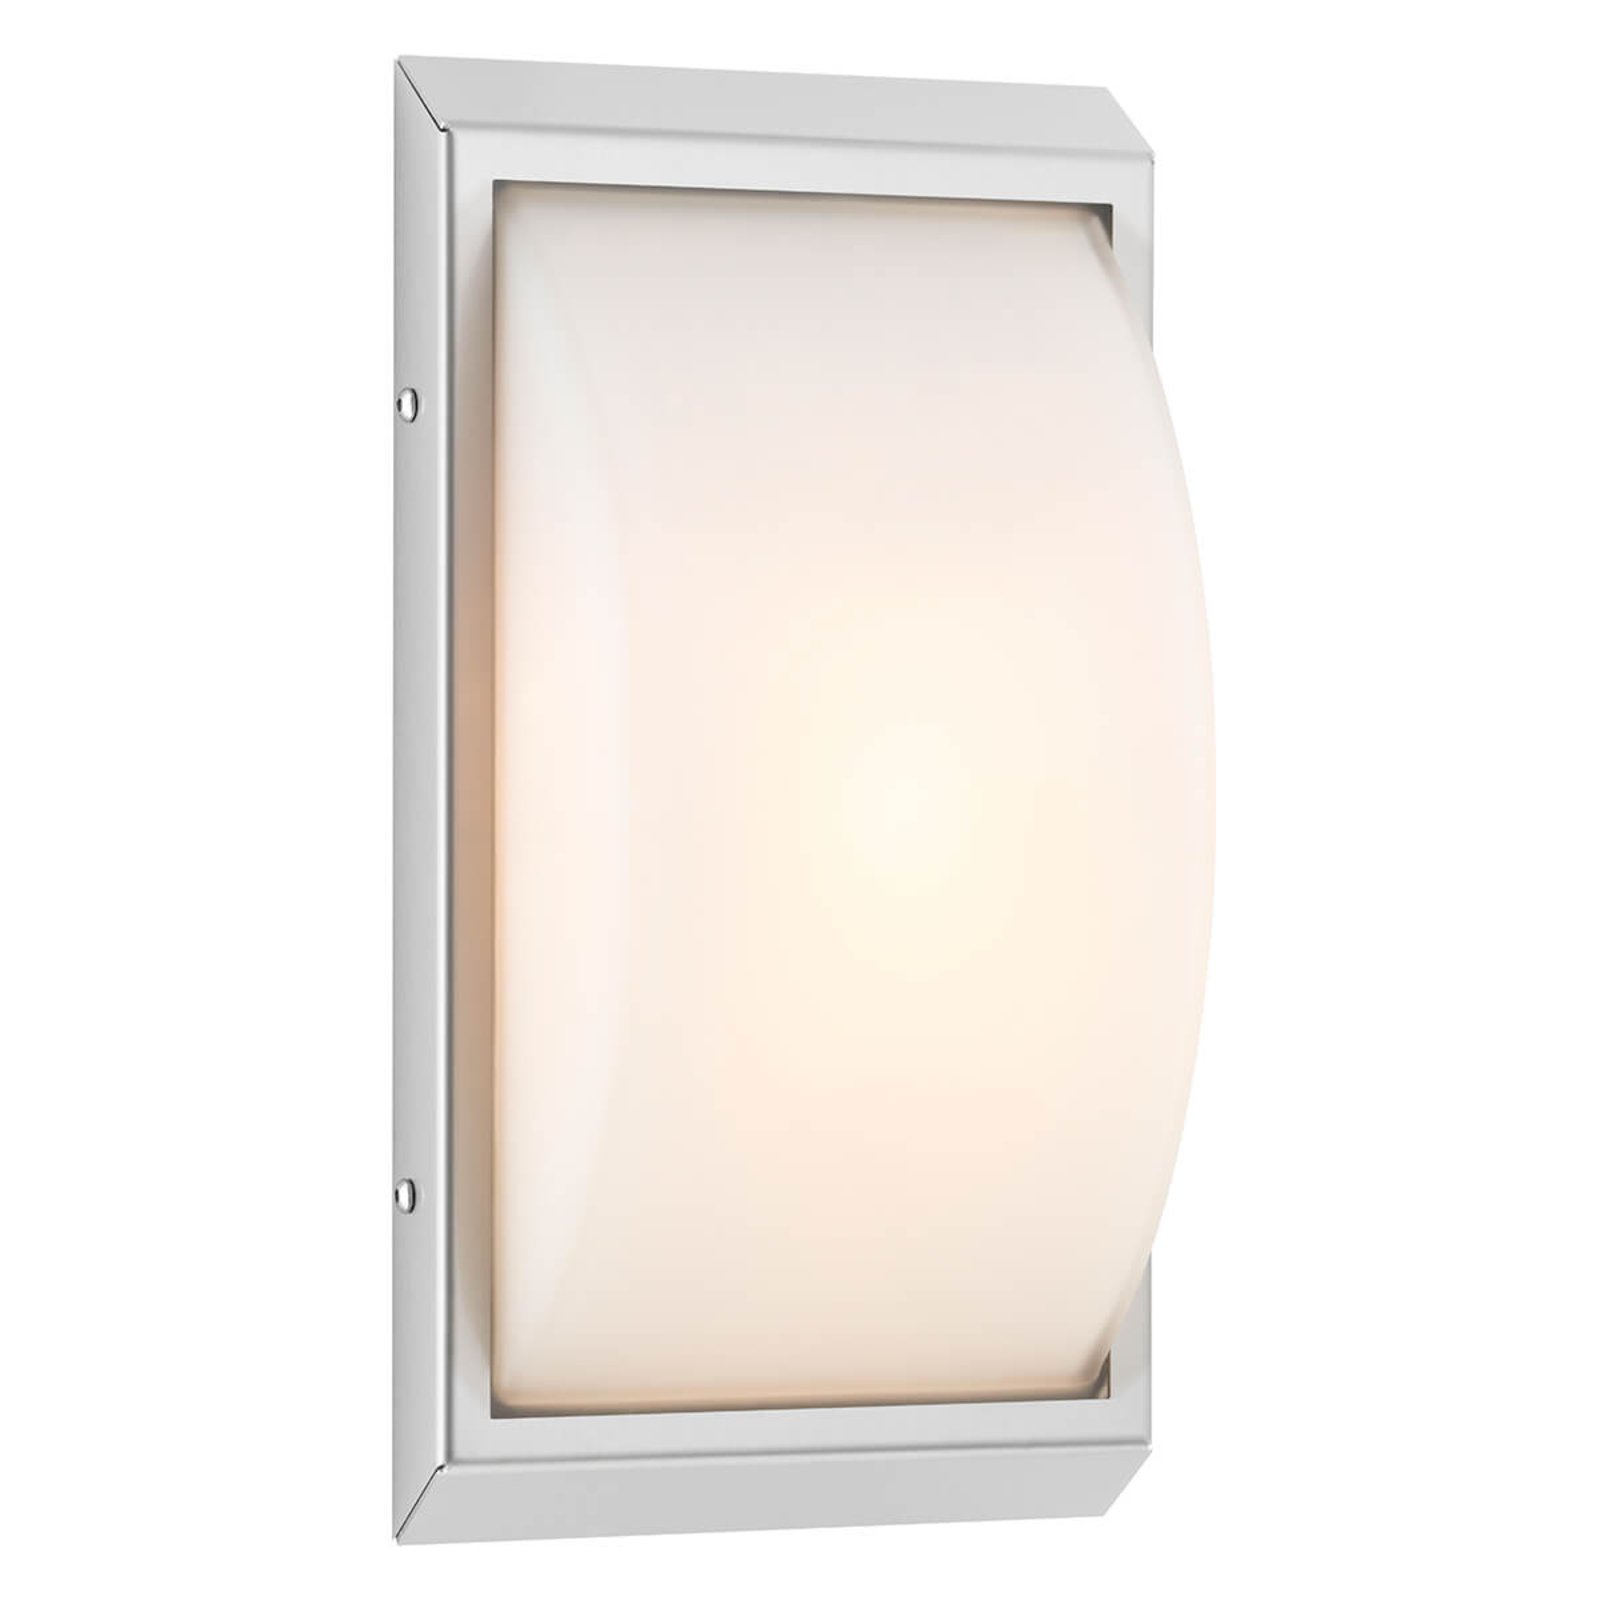 Visokokvalitetna LED vanjska zidna svjetiljka 052 sa senzorom